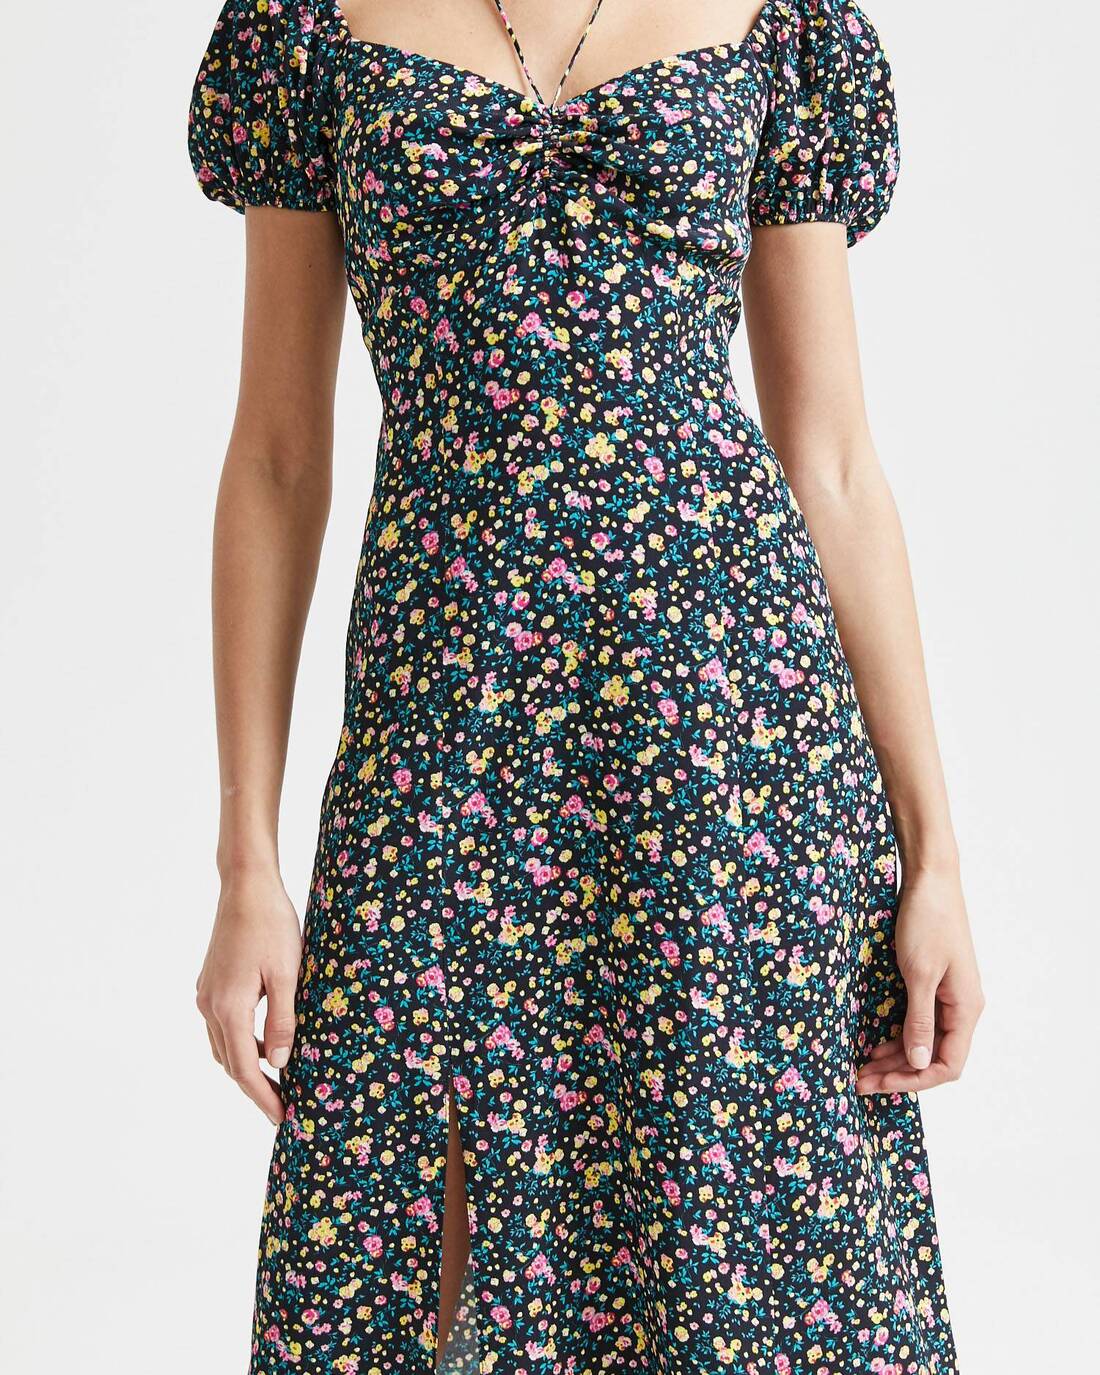 Vintage print ruched dress